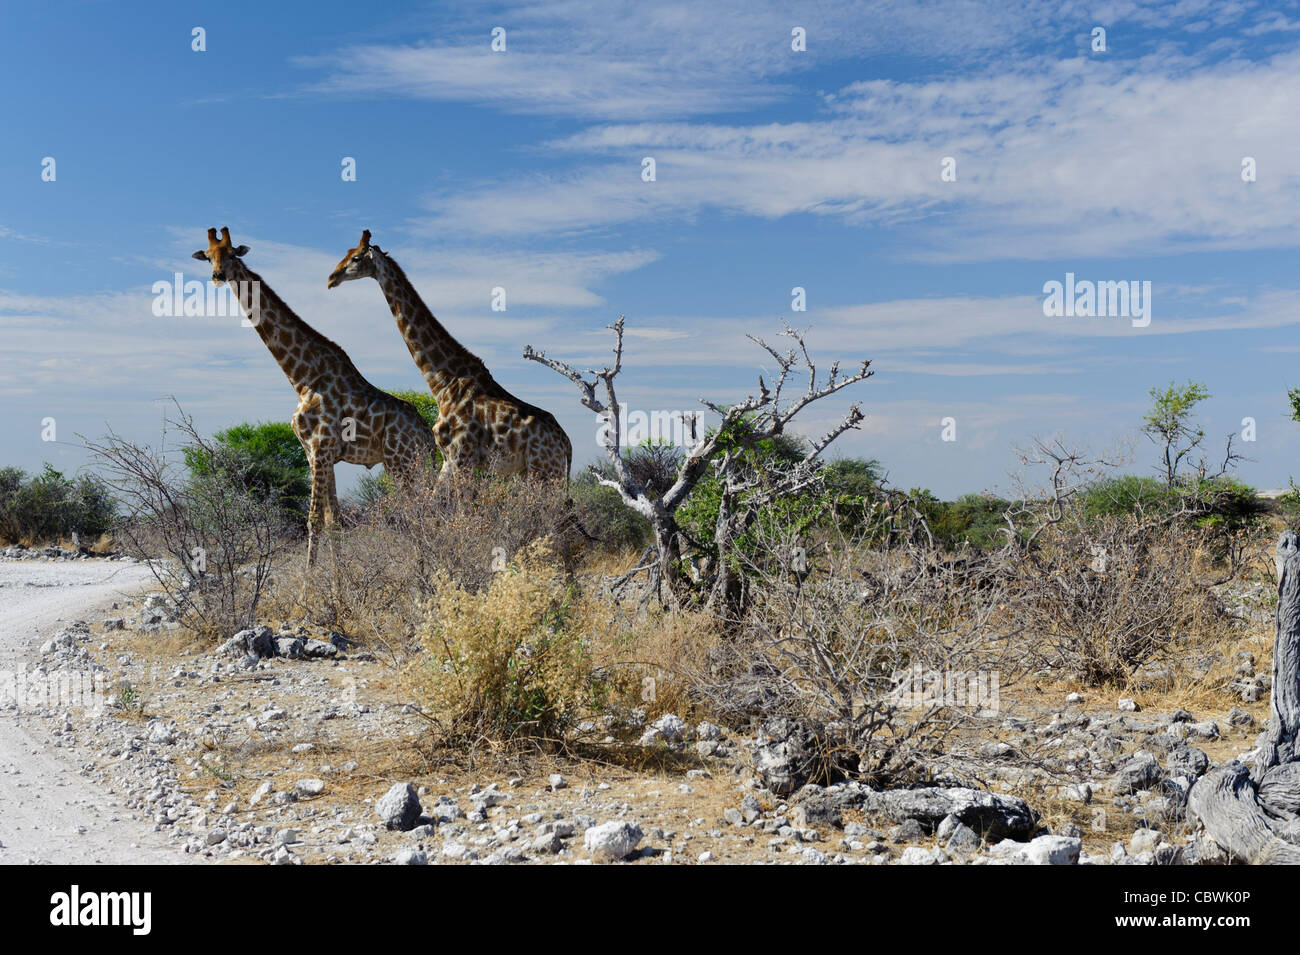 Two giraffes (Giraffa camelopardalis angolensis) in  Etosha National Park, Namibia. Stock Photo